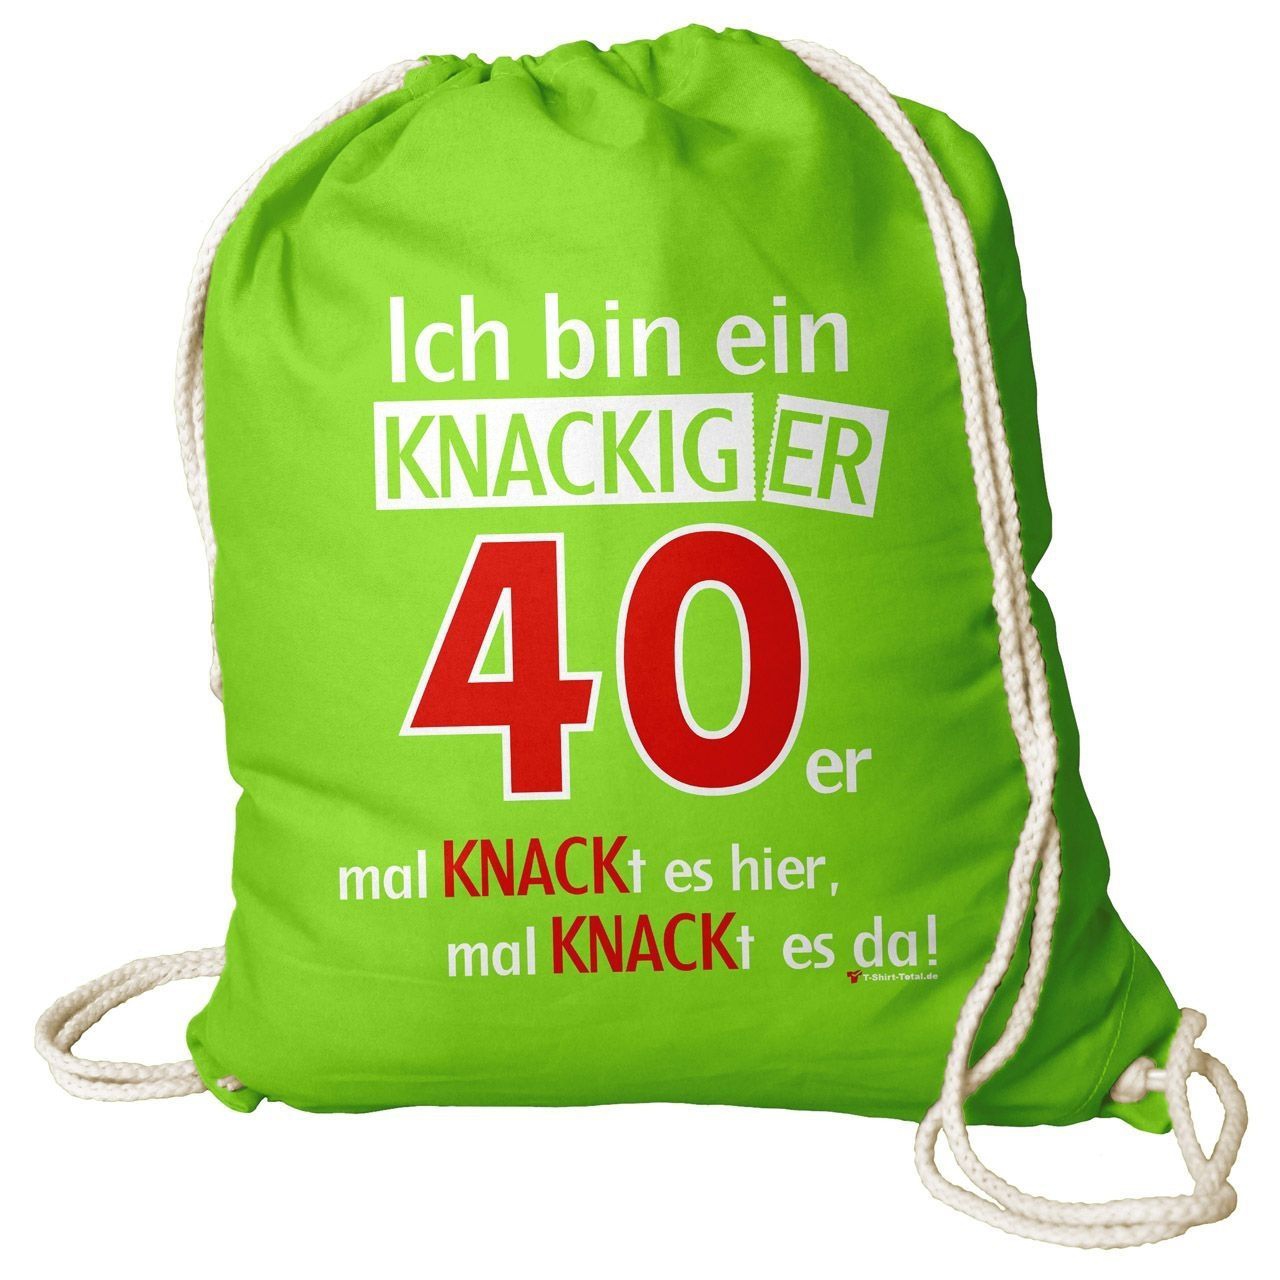 Knackiger 40er Rucksack Beutel hellgrün